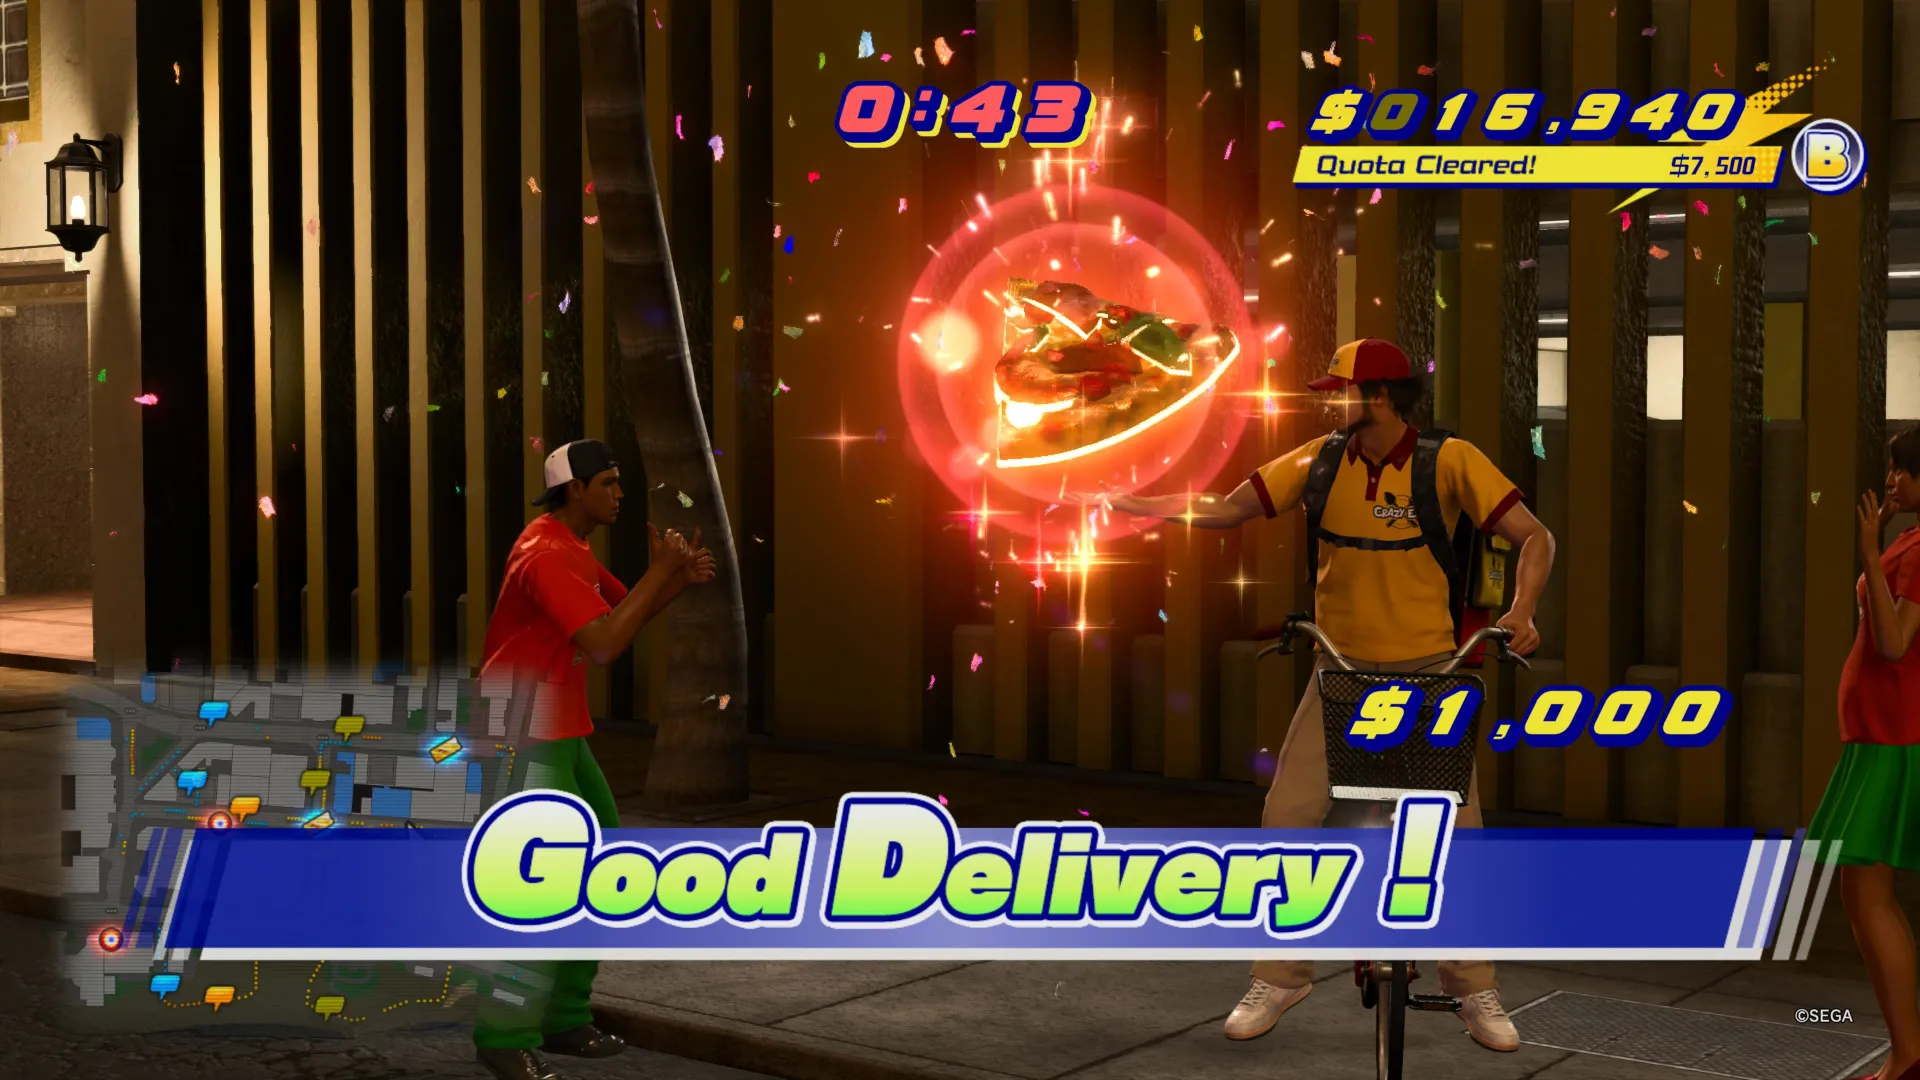 Ichiban entregando una rebanada de pizza